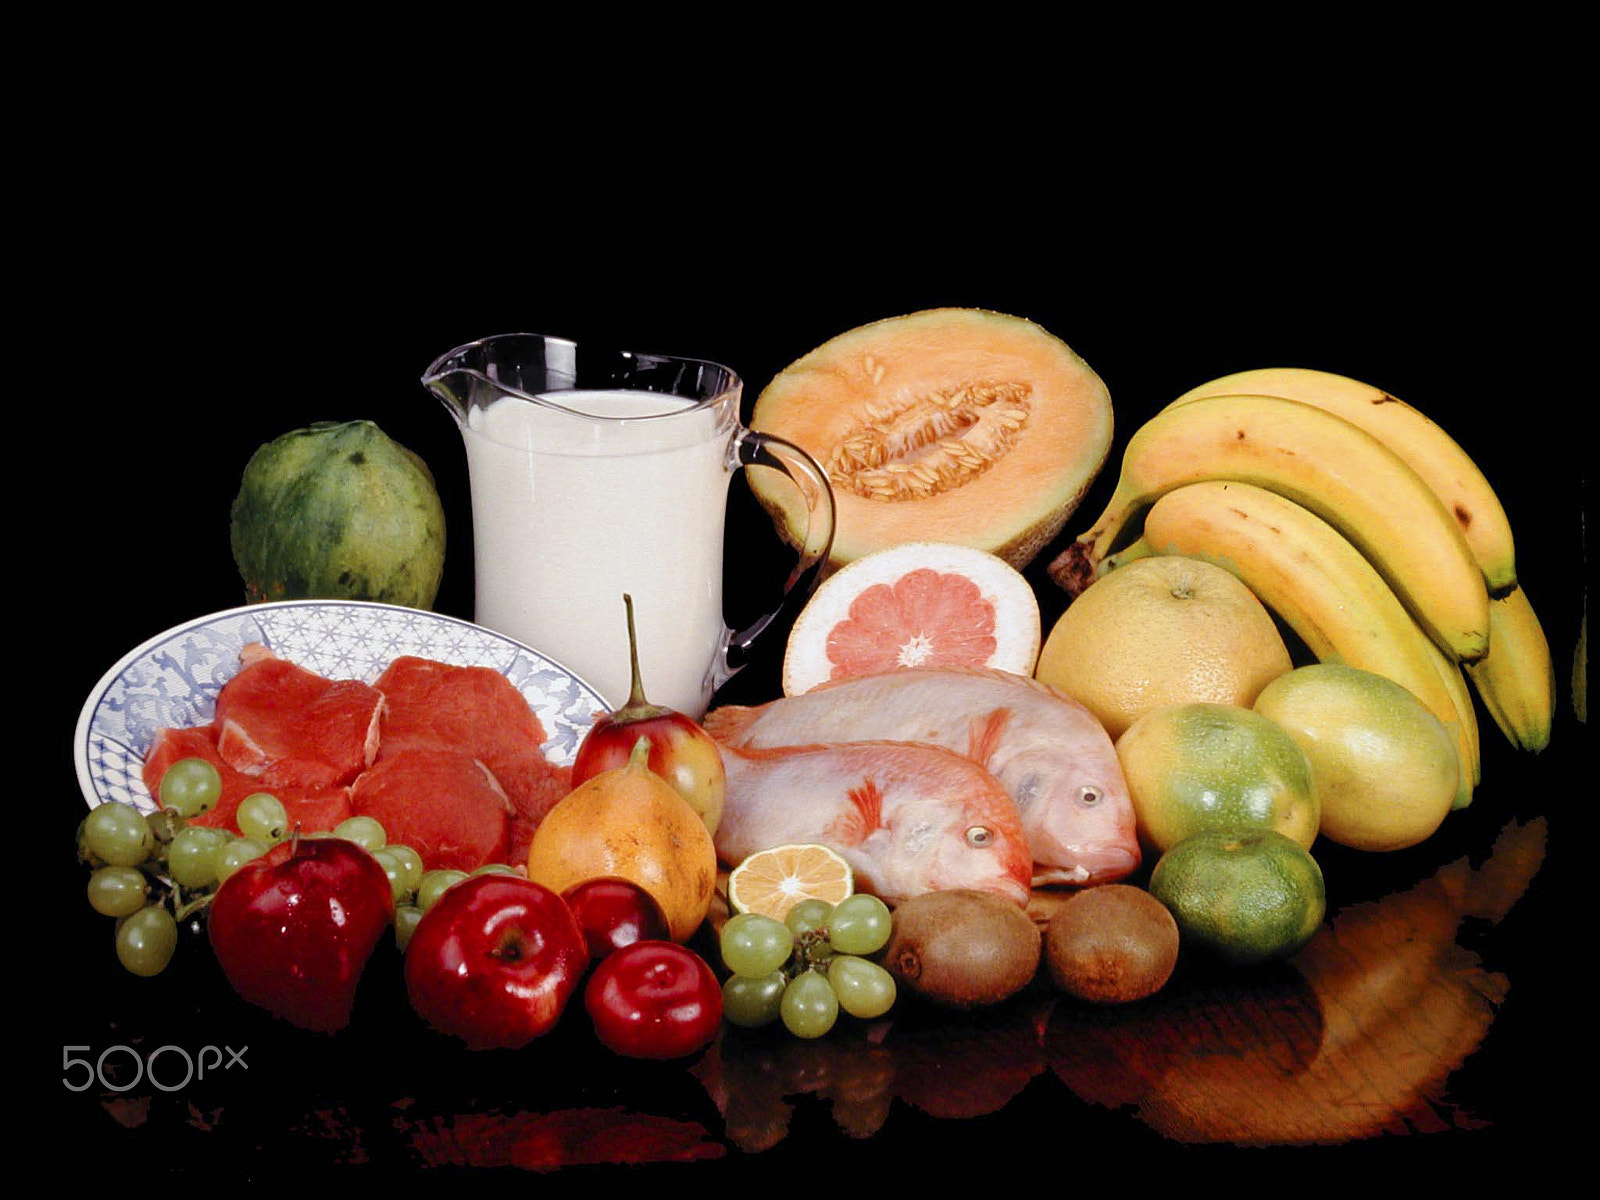 Nikon E990 sample photo. Bodegón de frutas carnes y leche photography